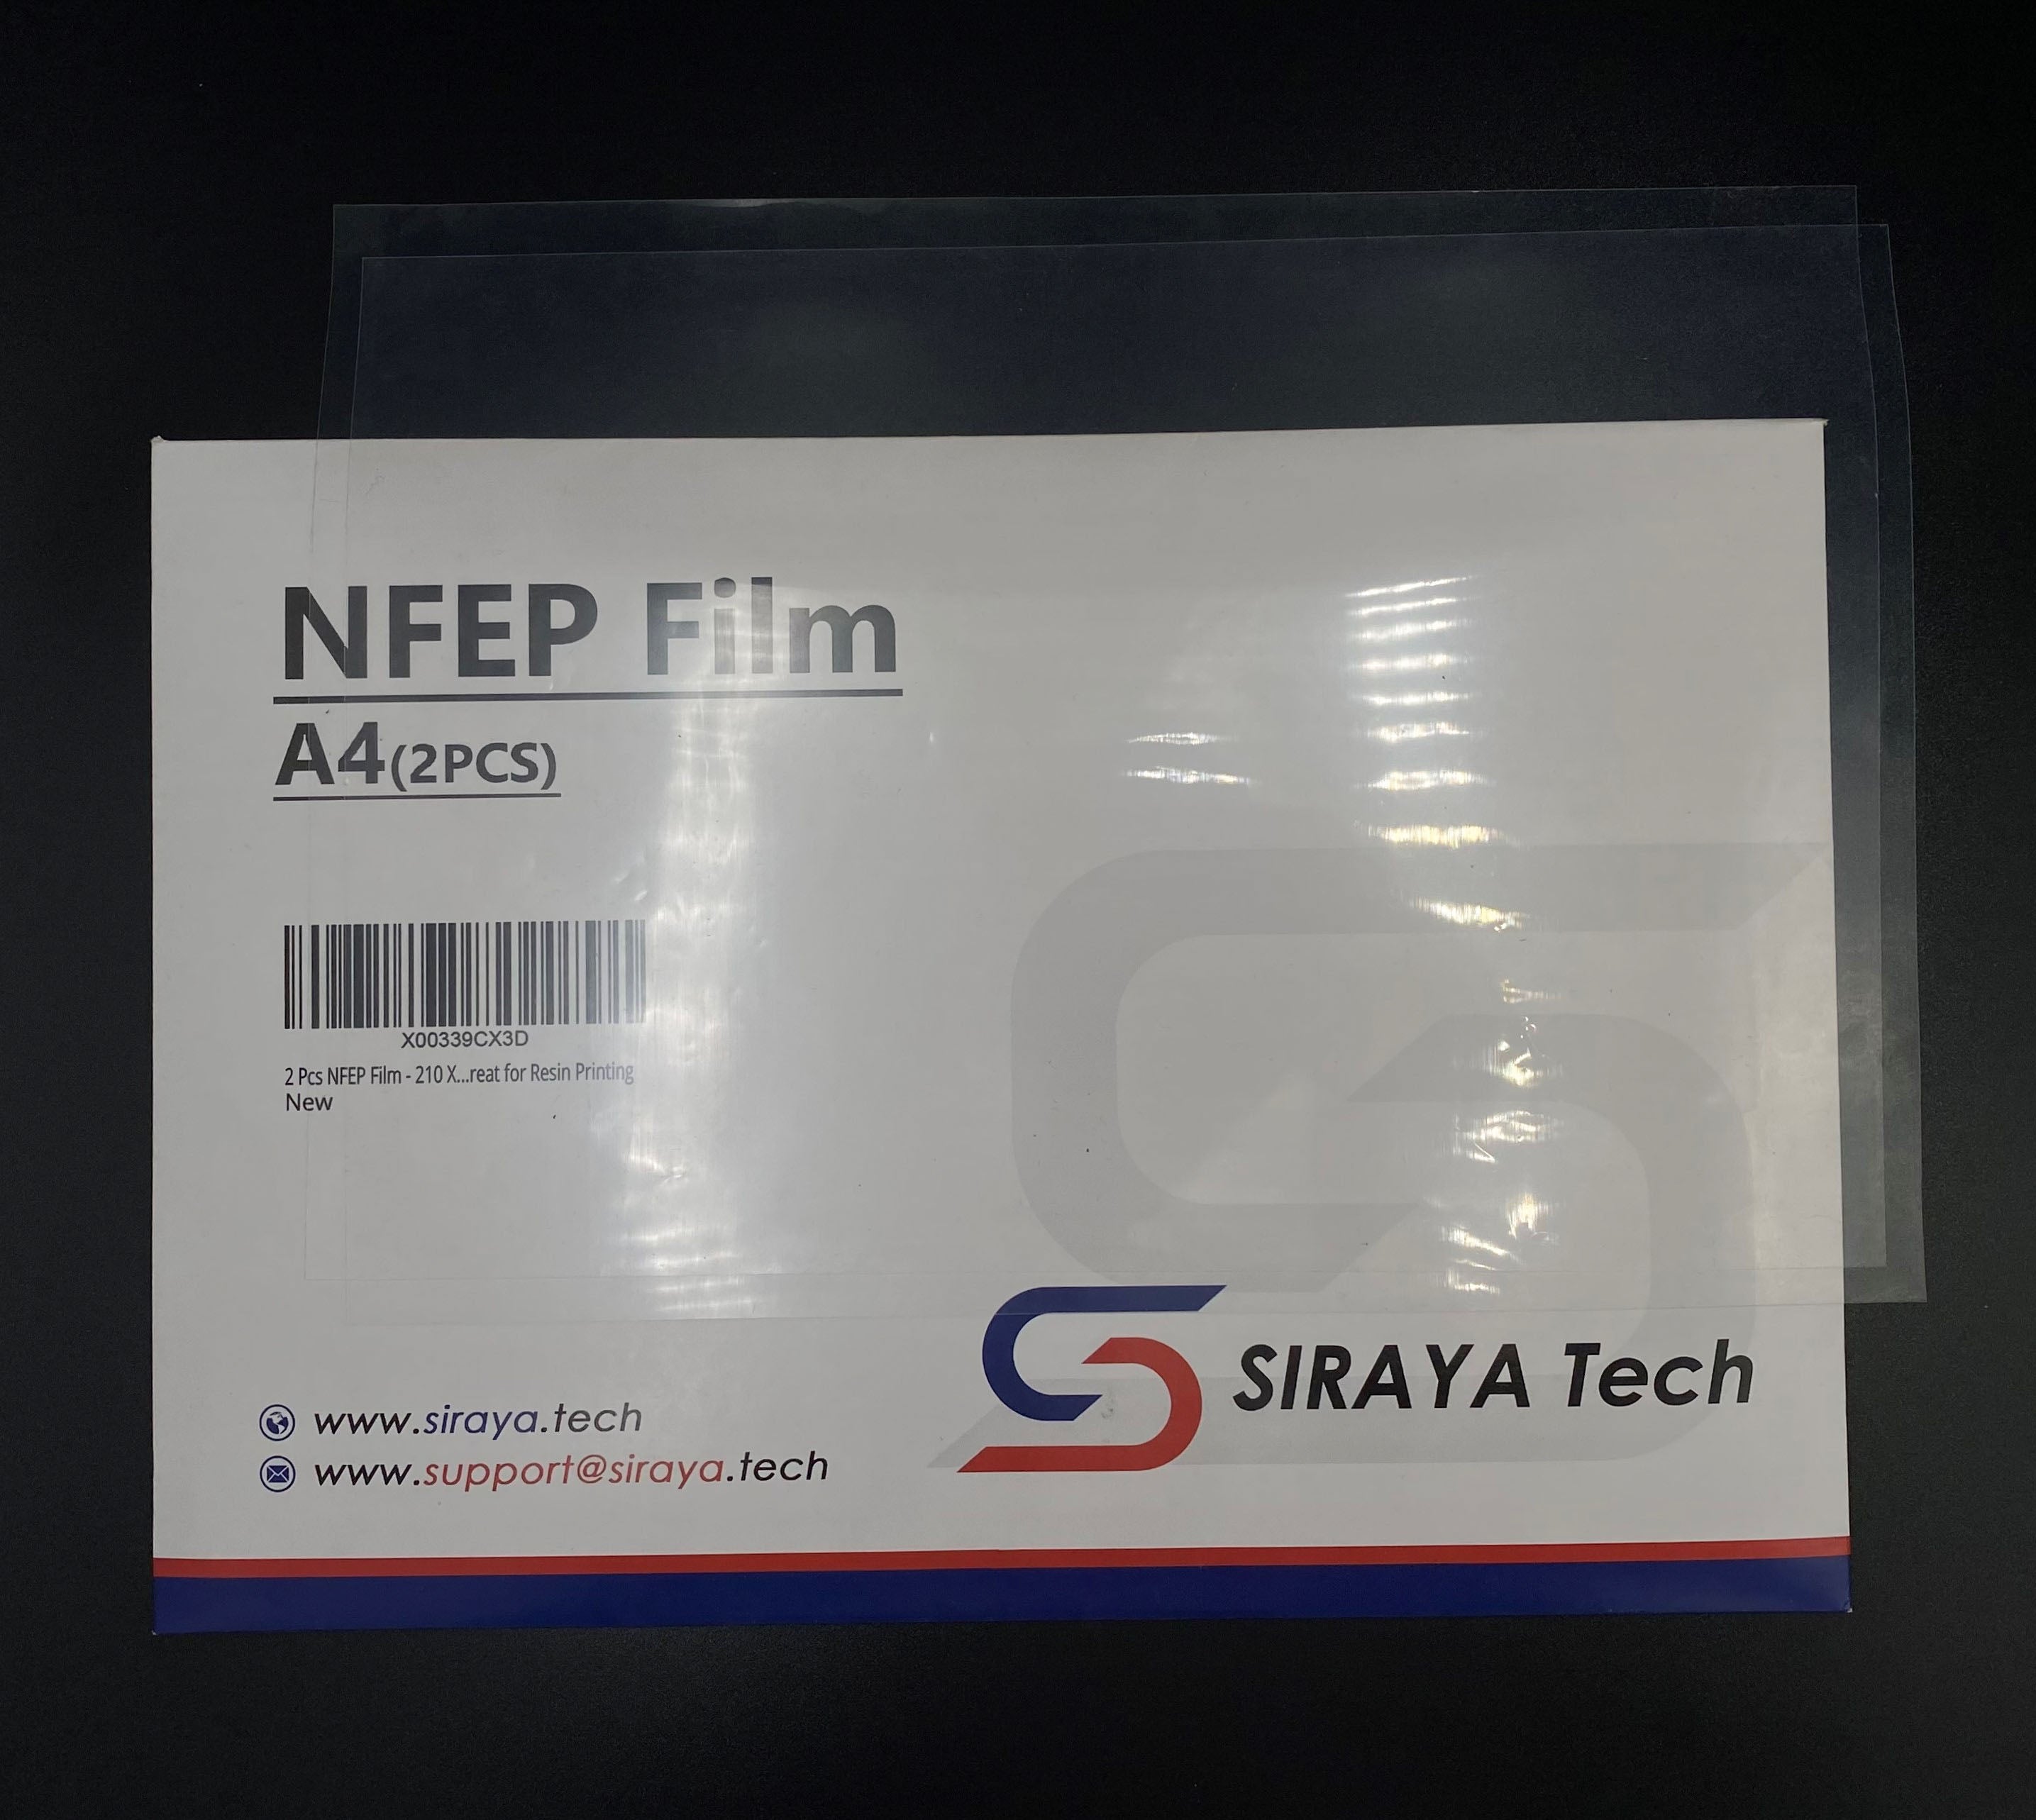 NFEP Film